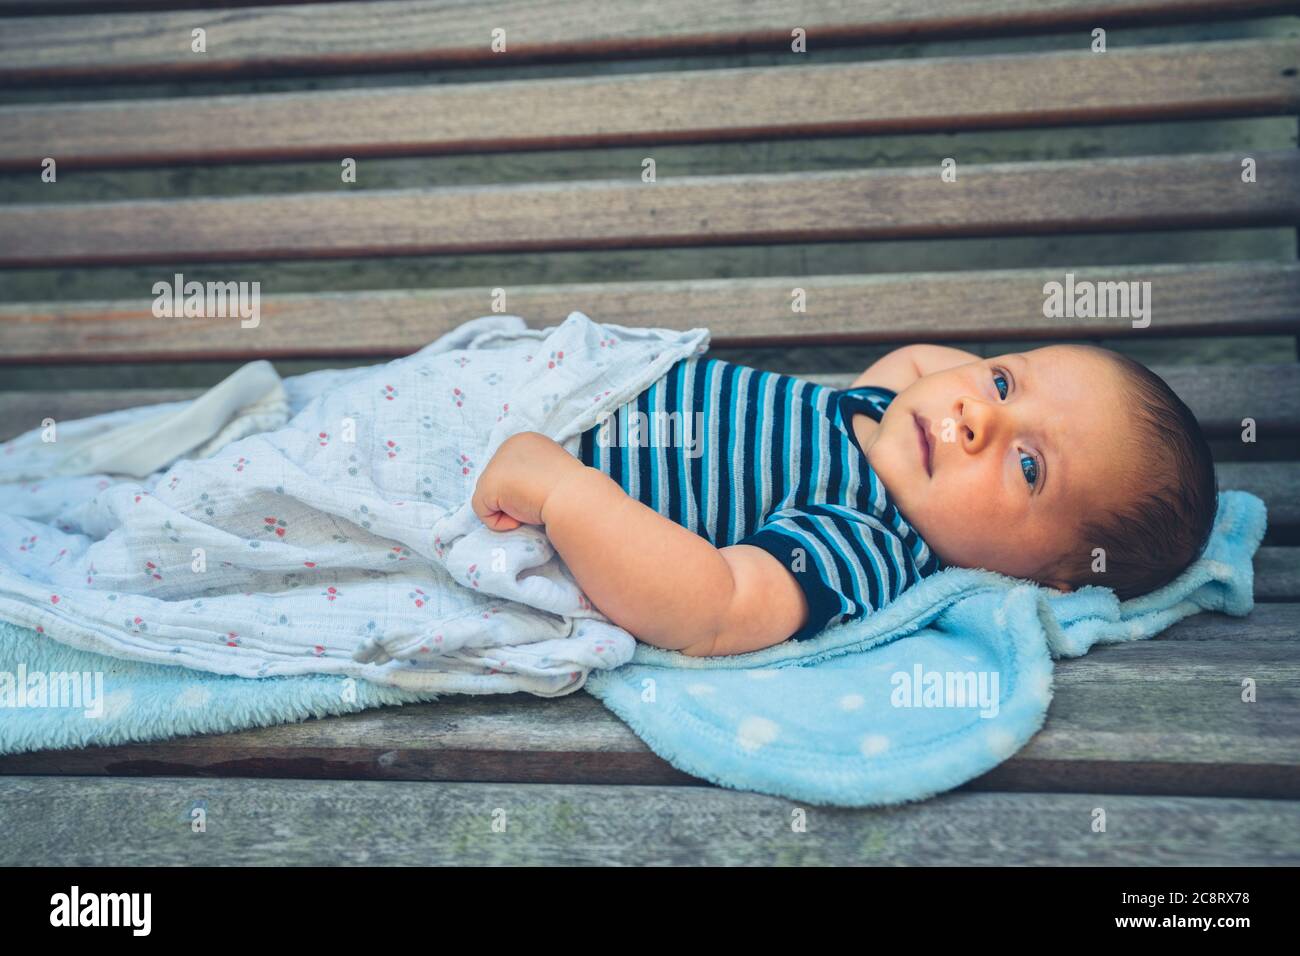 Un petit bébé repose sur un banc Banque D'Images